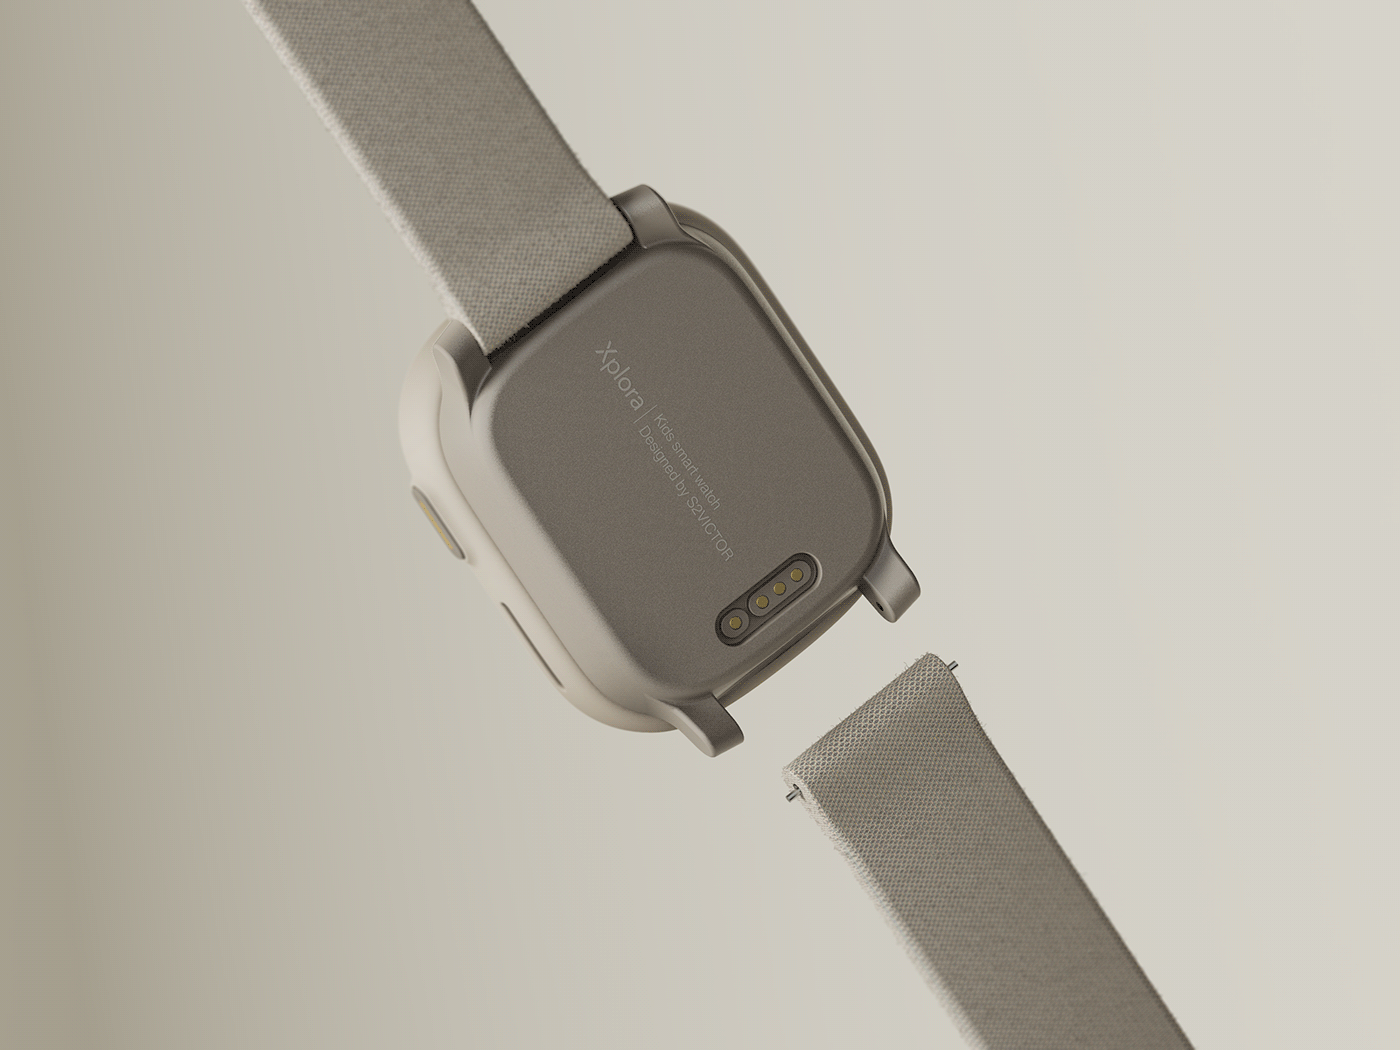 industrialdesign kidswatch smartwatch 산업디자인 스마트워치 제품디자인